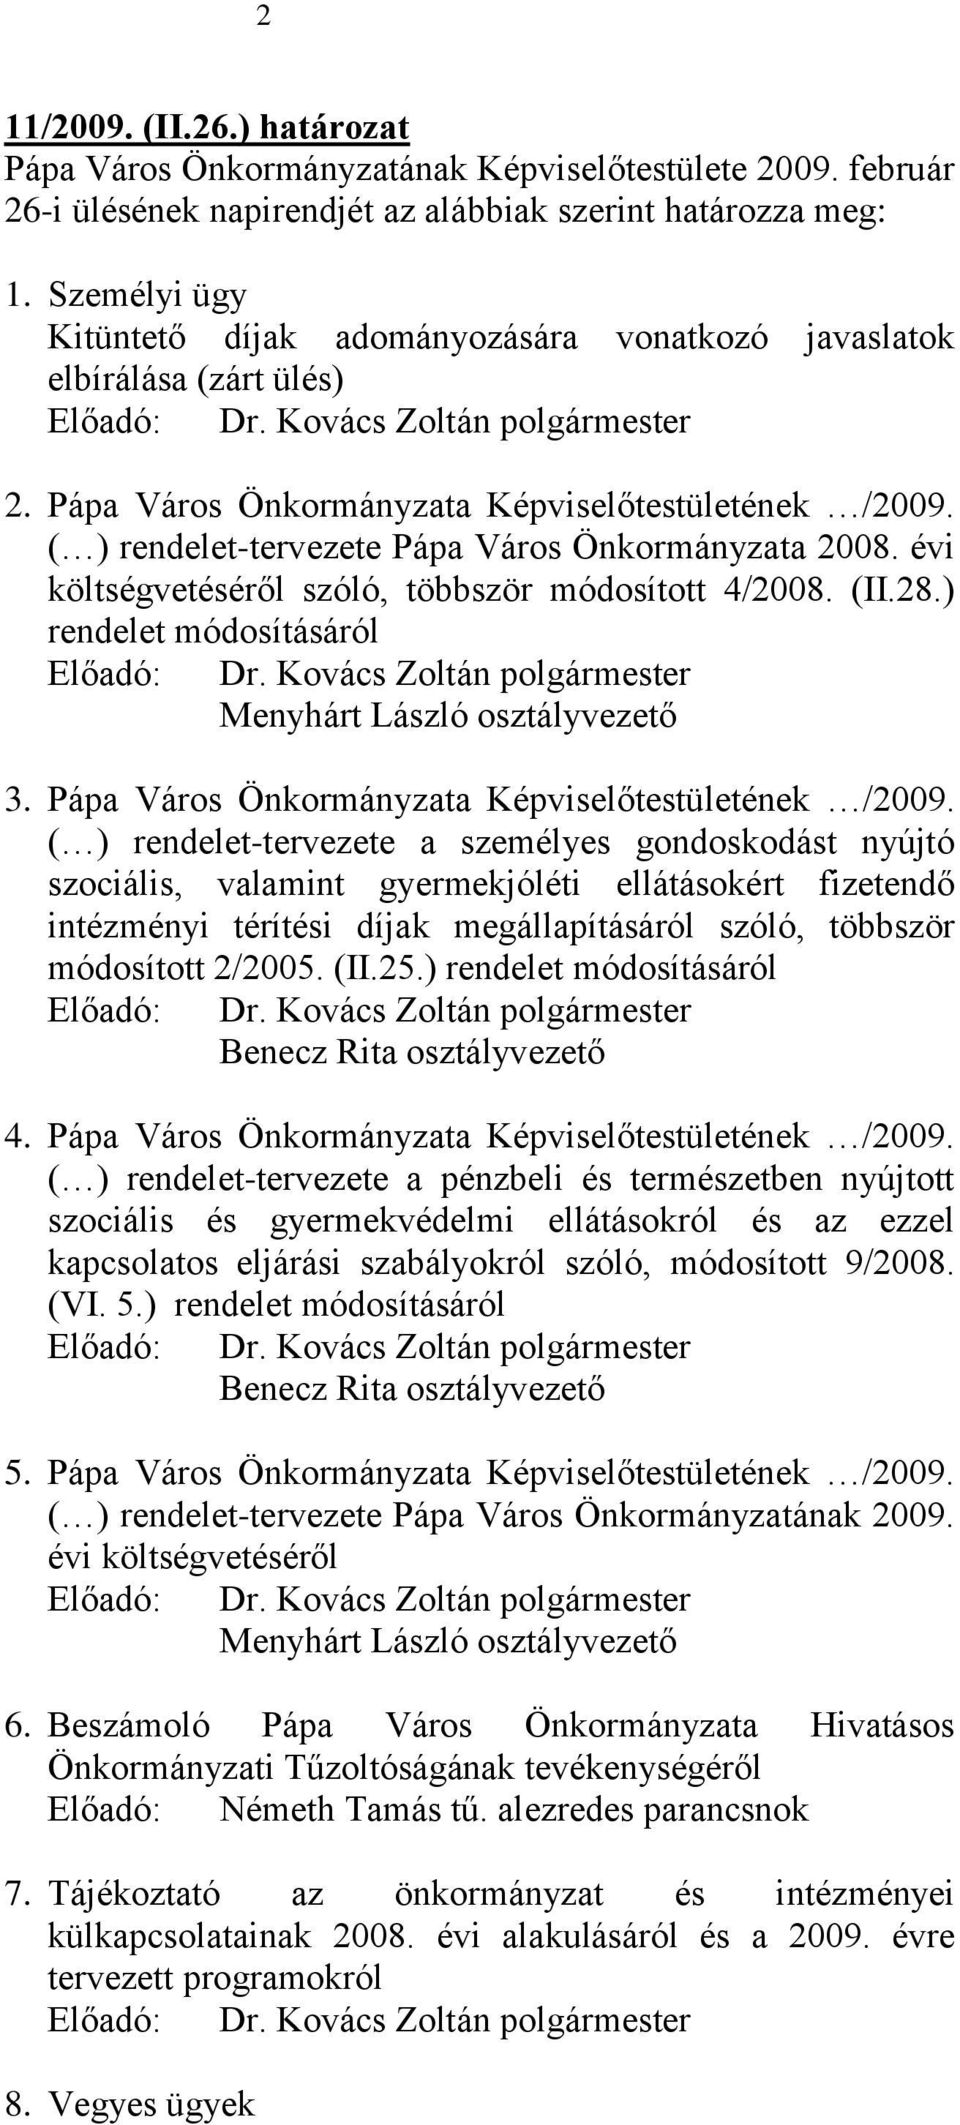 ( ) rendelet-tervezete Pápa Város Önkormányzata 2008. évi költségvetéséről szóló, többször módosított 4/2008. (II.28.) rendelet módosításáról Előadó: Menyhárt László osztályvezető 3.